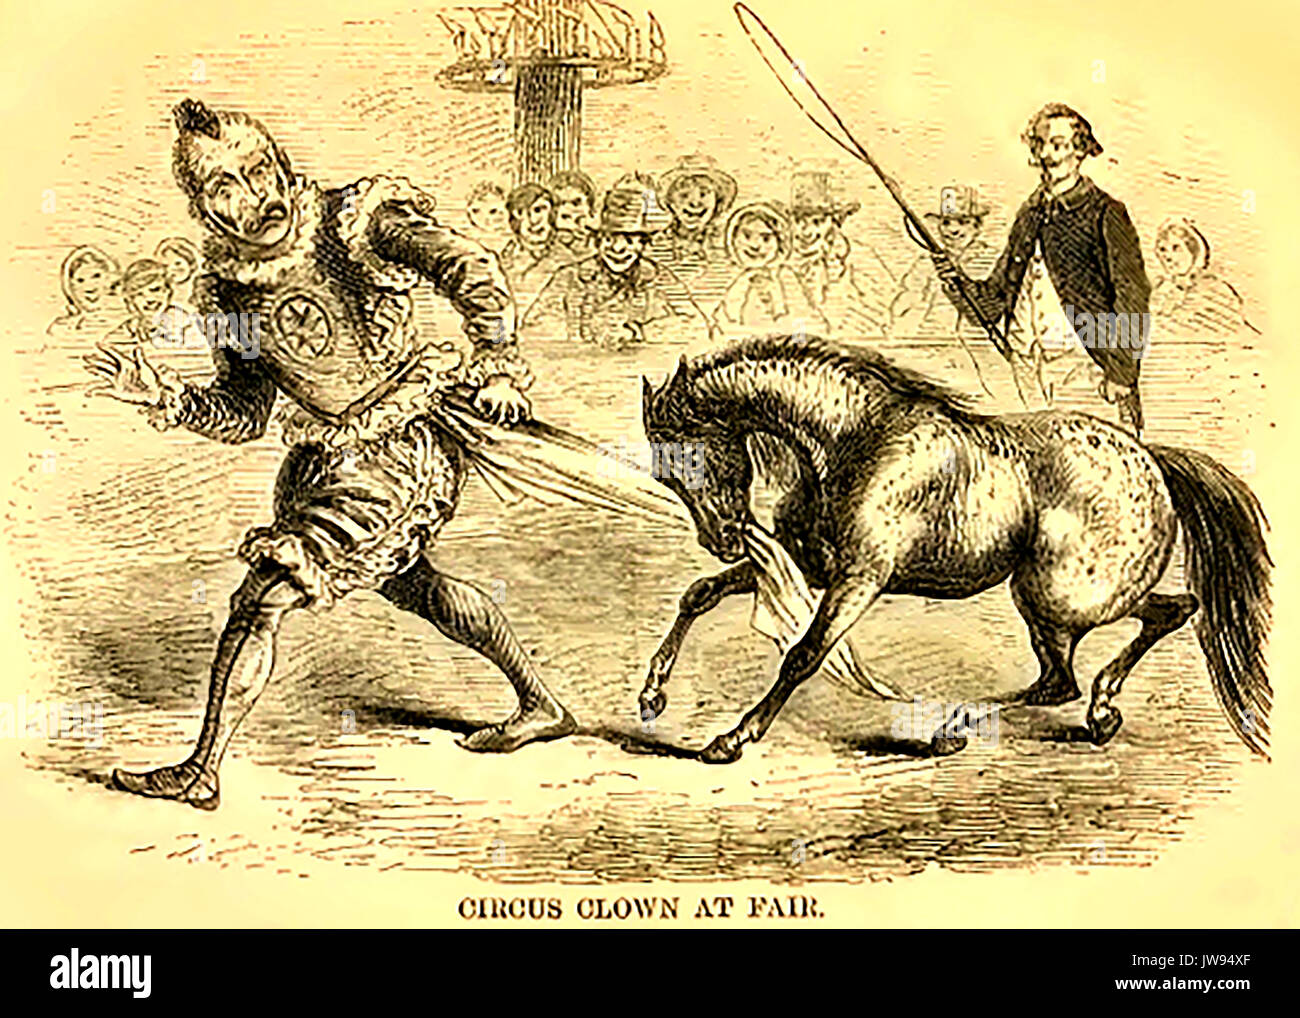 Un clown de cirque anglais victorien d'effectuer lors d'une foire avec un poney Shetland et ringmaster Banque D'Images